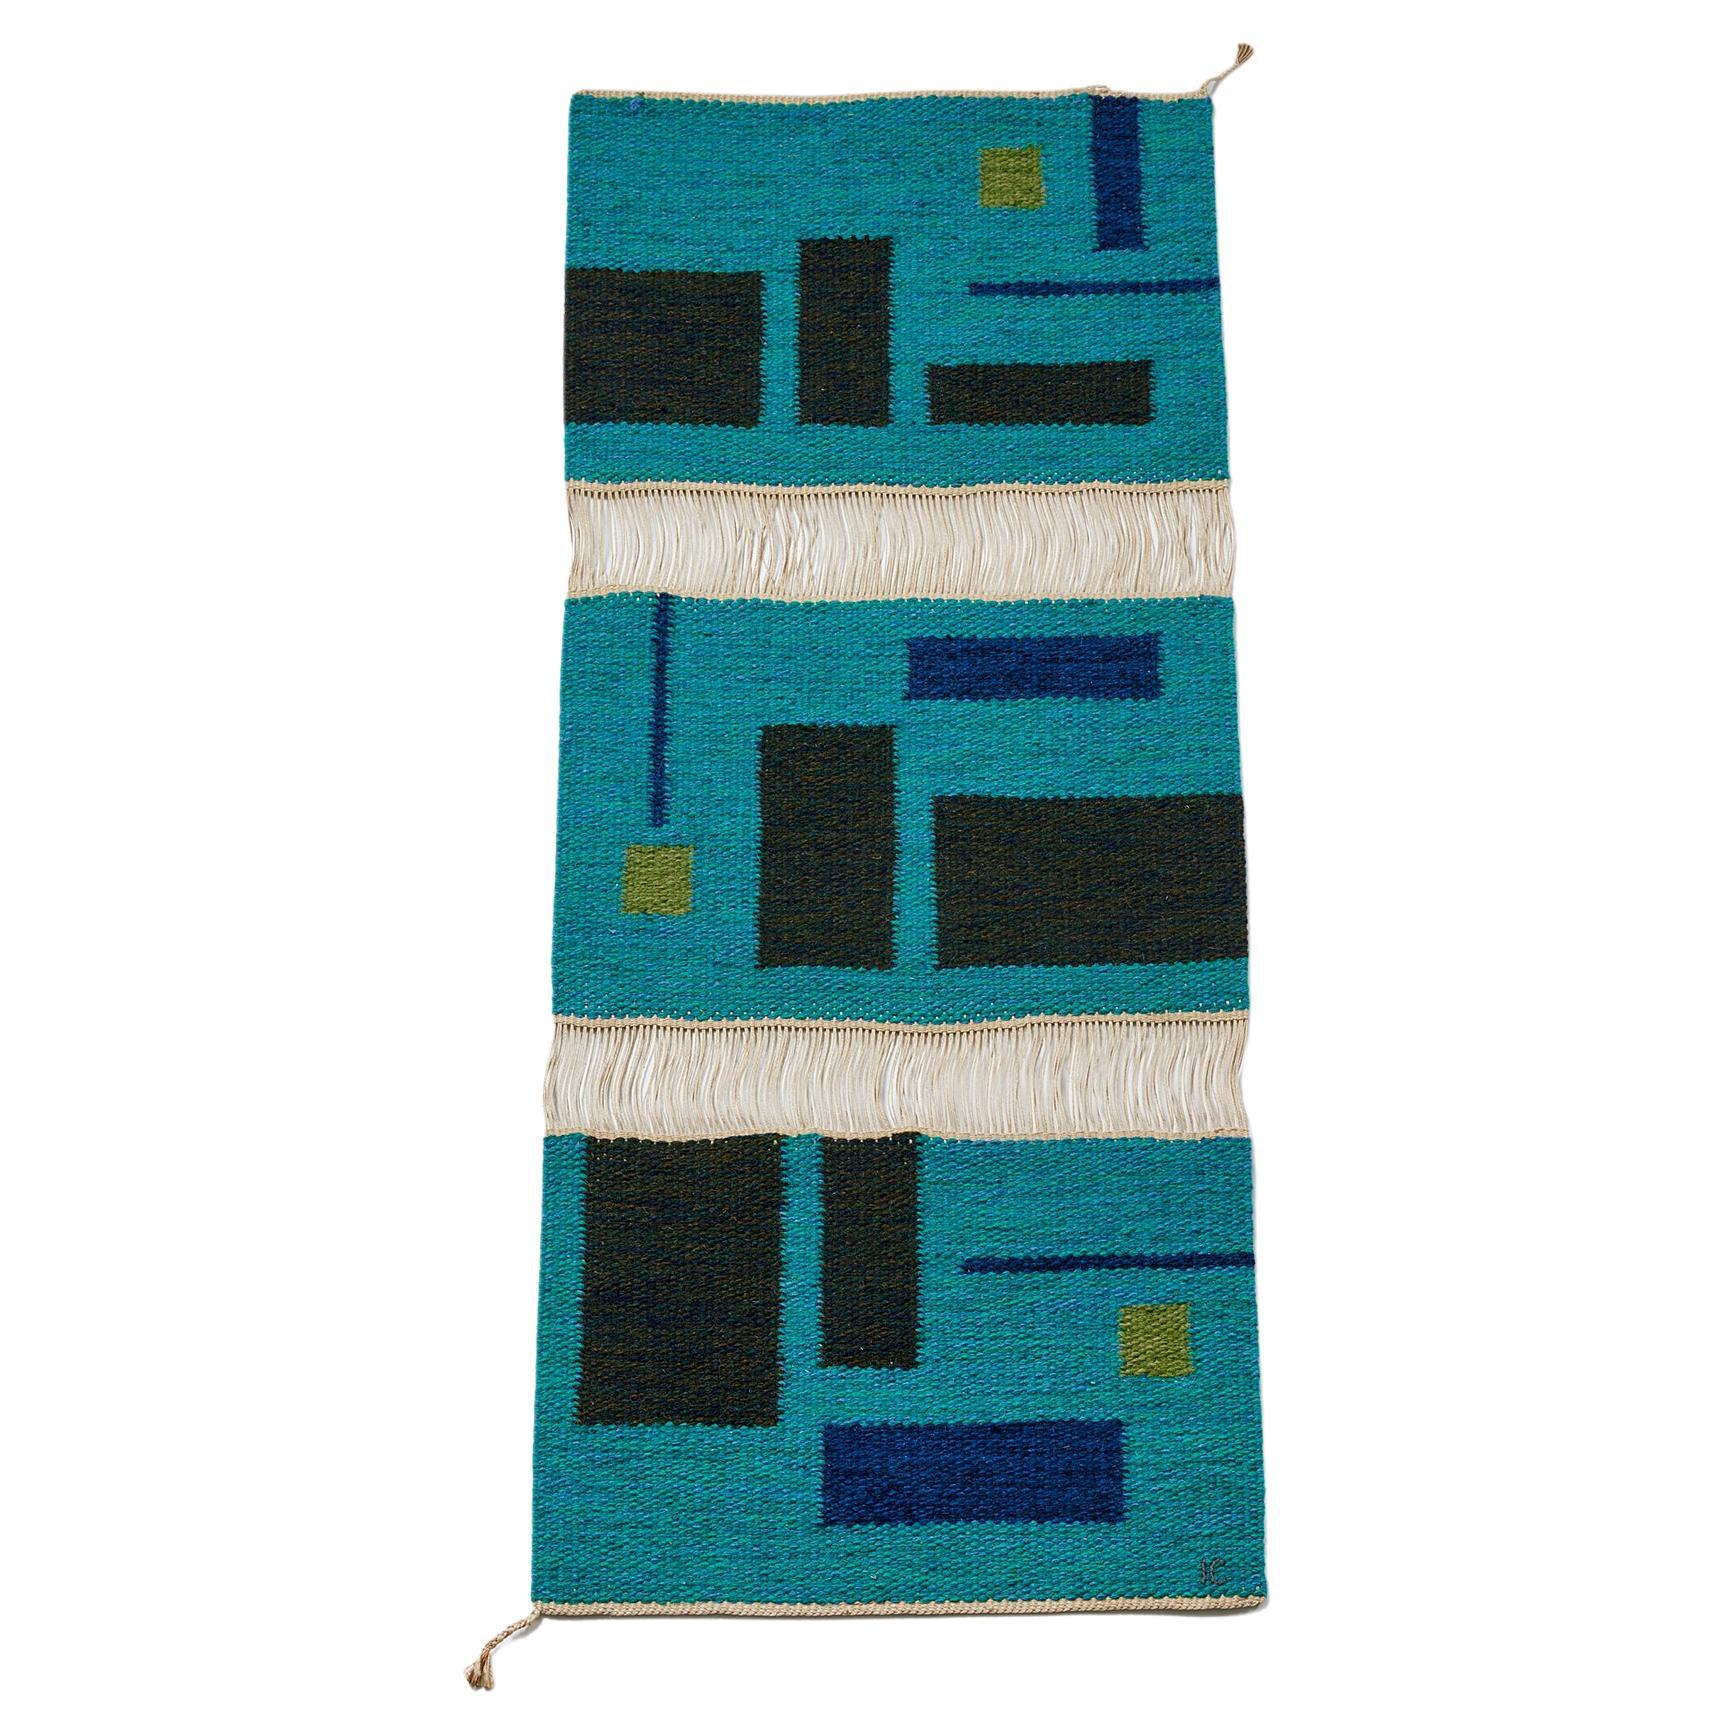 Tapestry ‘Vävnad’ Designed by Ingemar Callenberg for Gammelstads Handväveri AB For Sale